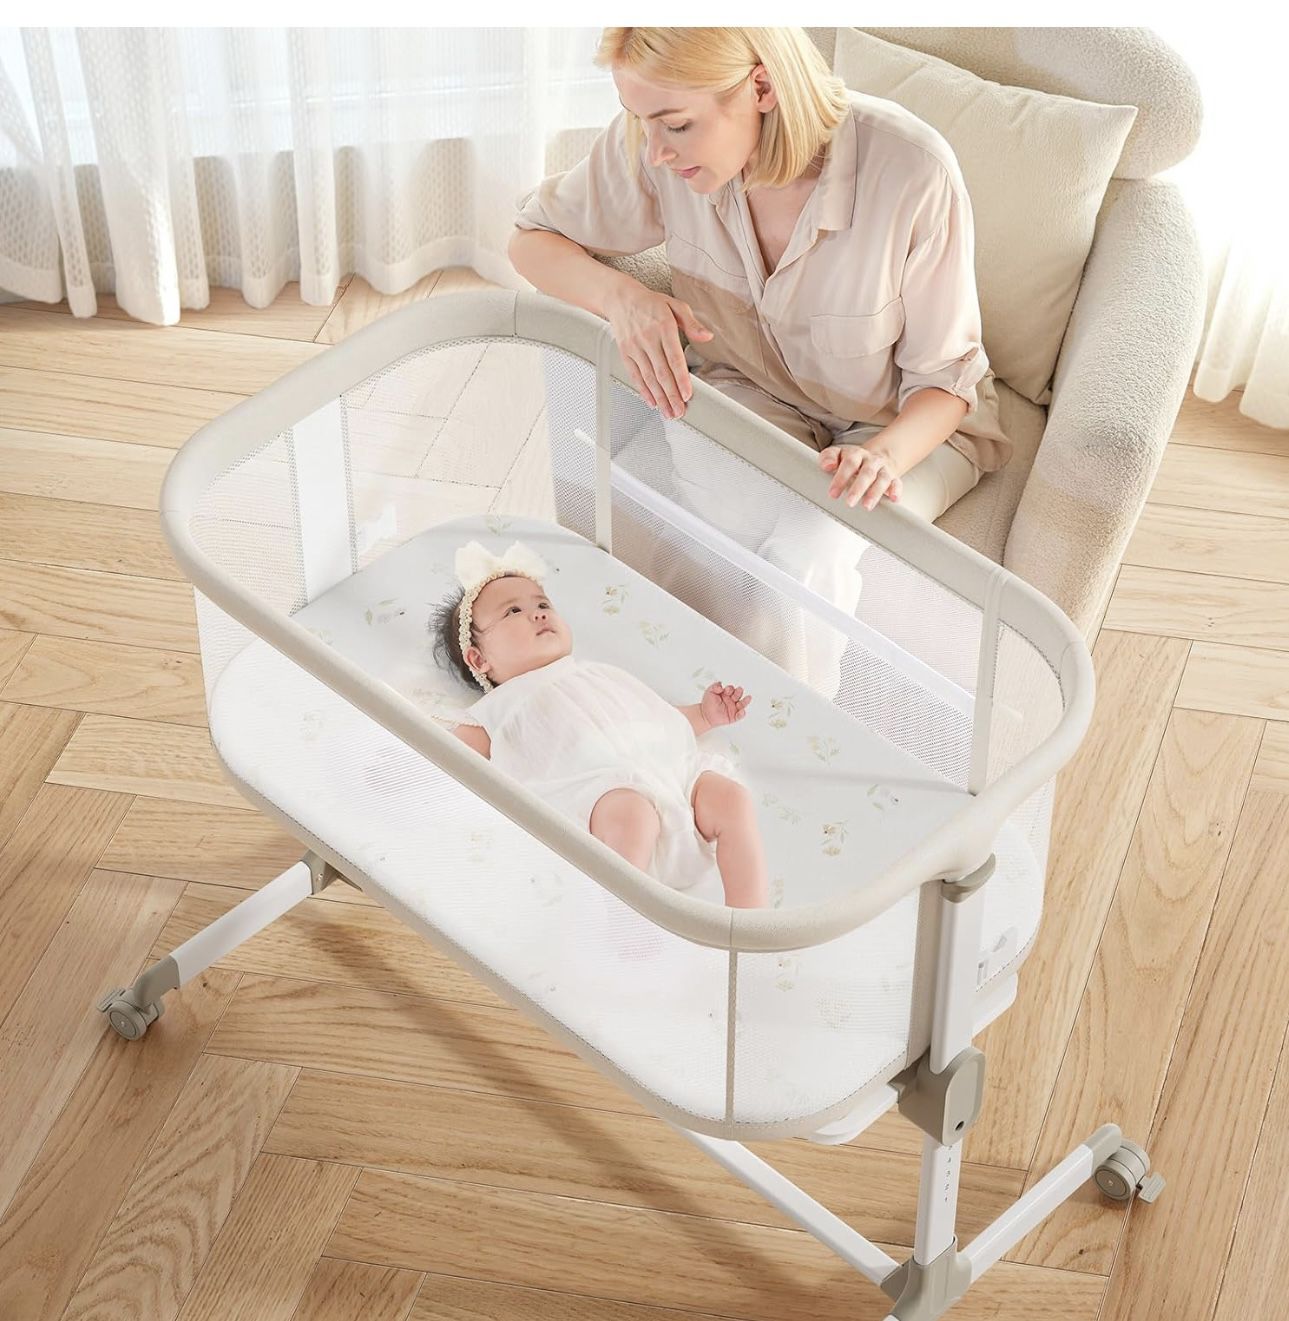  Baby Infant Bassinets Bedside Sleeper - All Mesh Bedside Bassinet with Wheels, 7 Height Adjustable Baby Bassinet for Infants, Beige